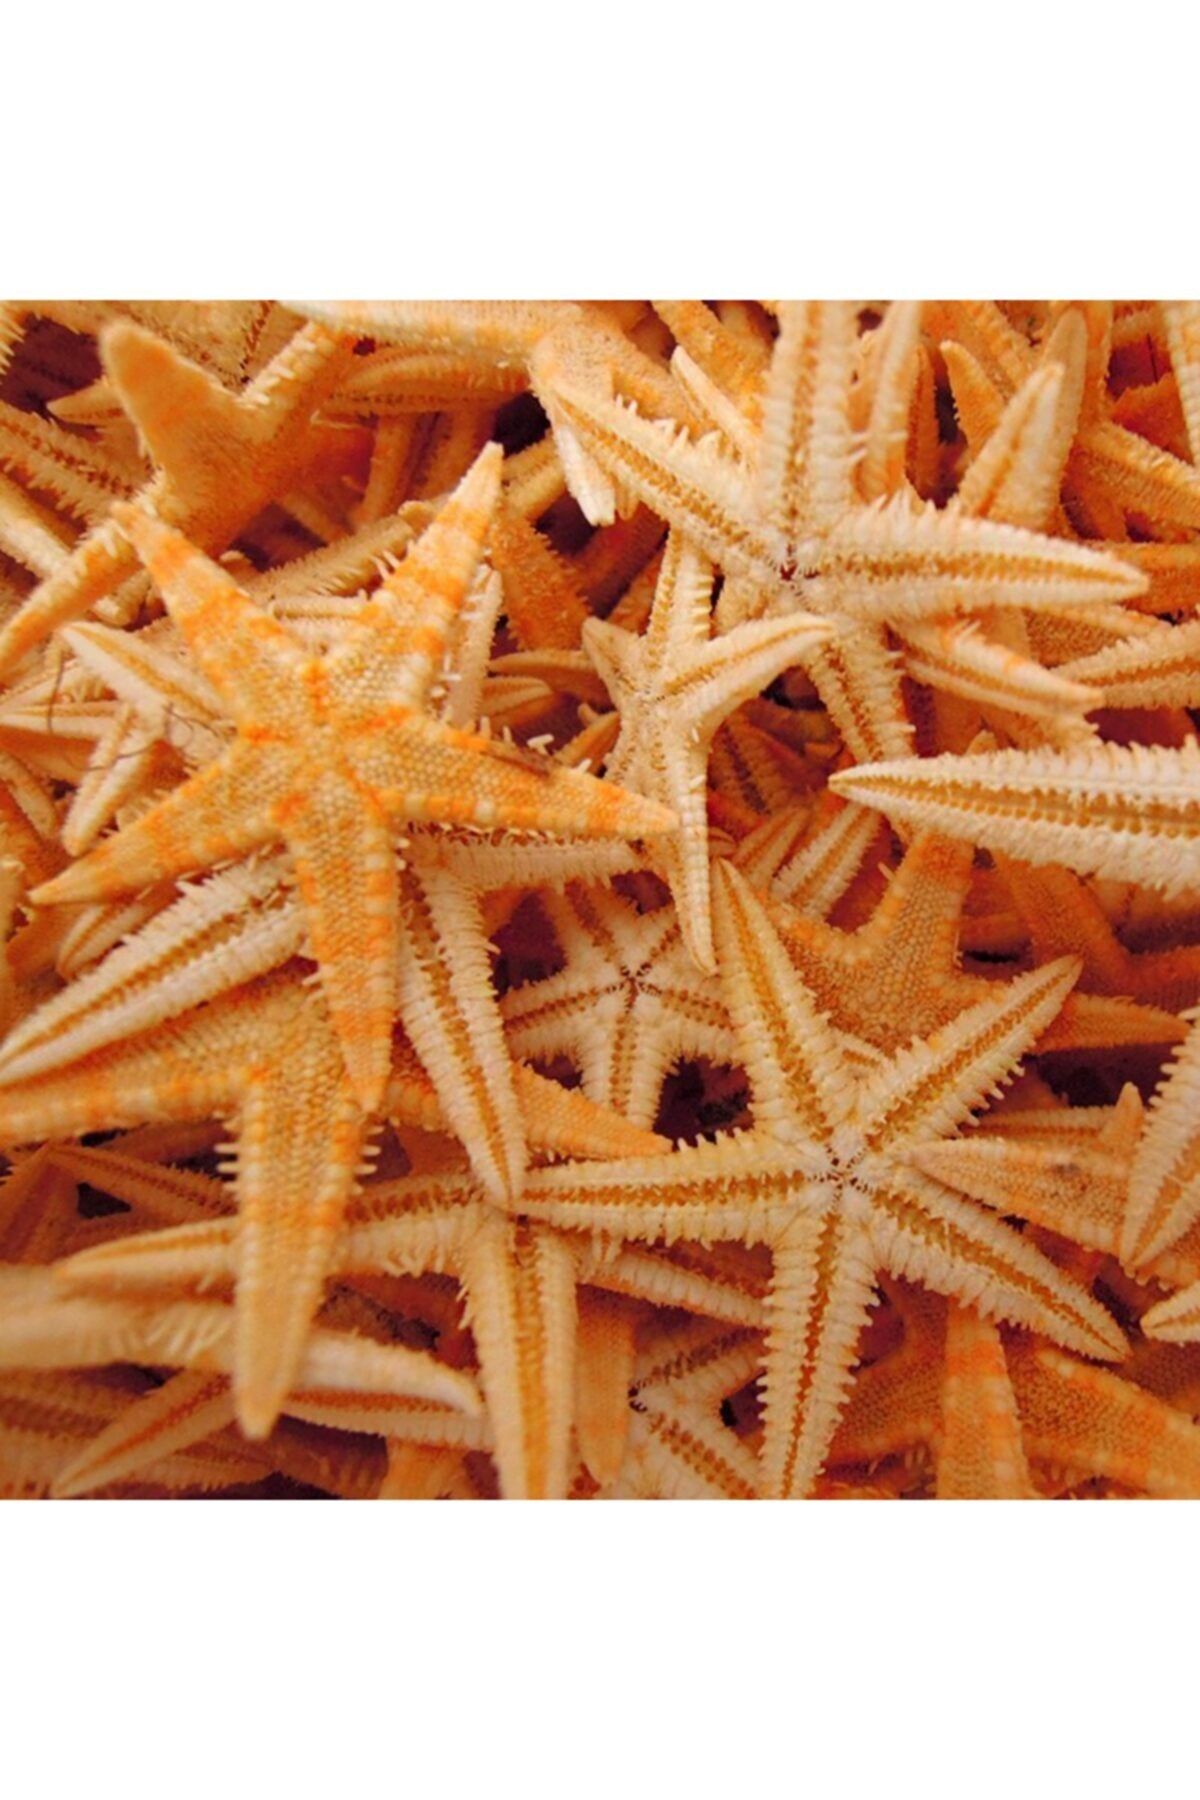 Aker Hediyelik Ucuz Deniz Yıldızı 25 Adet 1,5x3,5cm Kuru Deniz Yıldızları Mevlit Şekeri Süsleme Malzemeleri